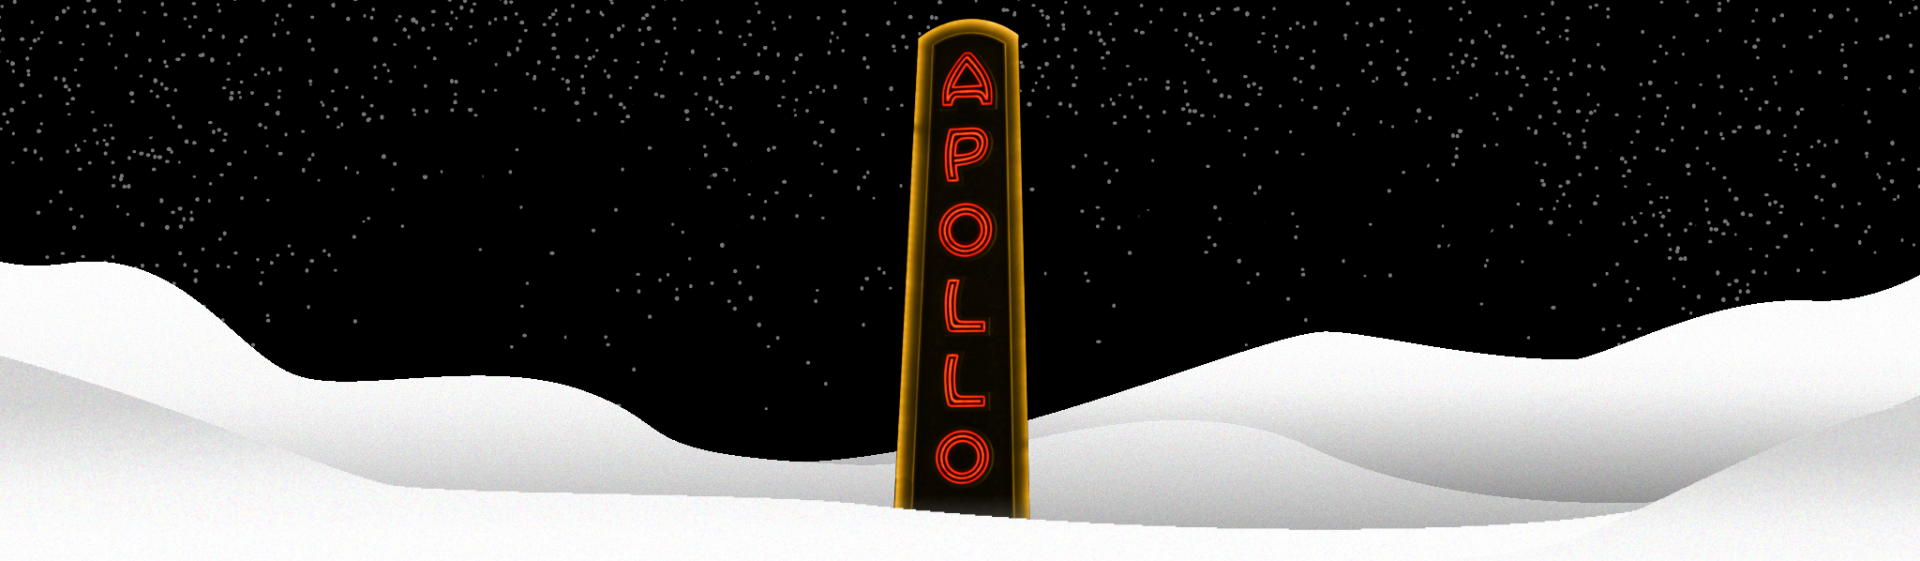 ApolloHolidays_2048x598 (2)